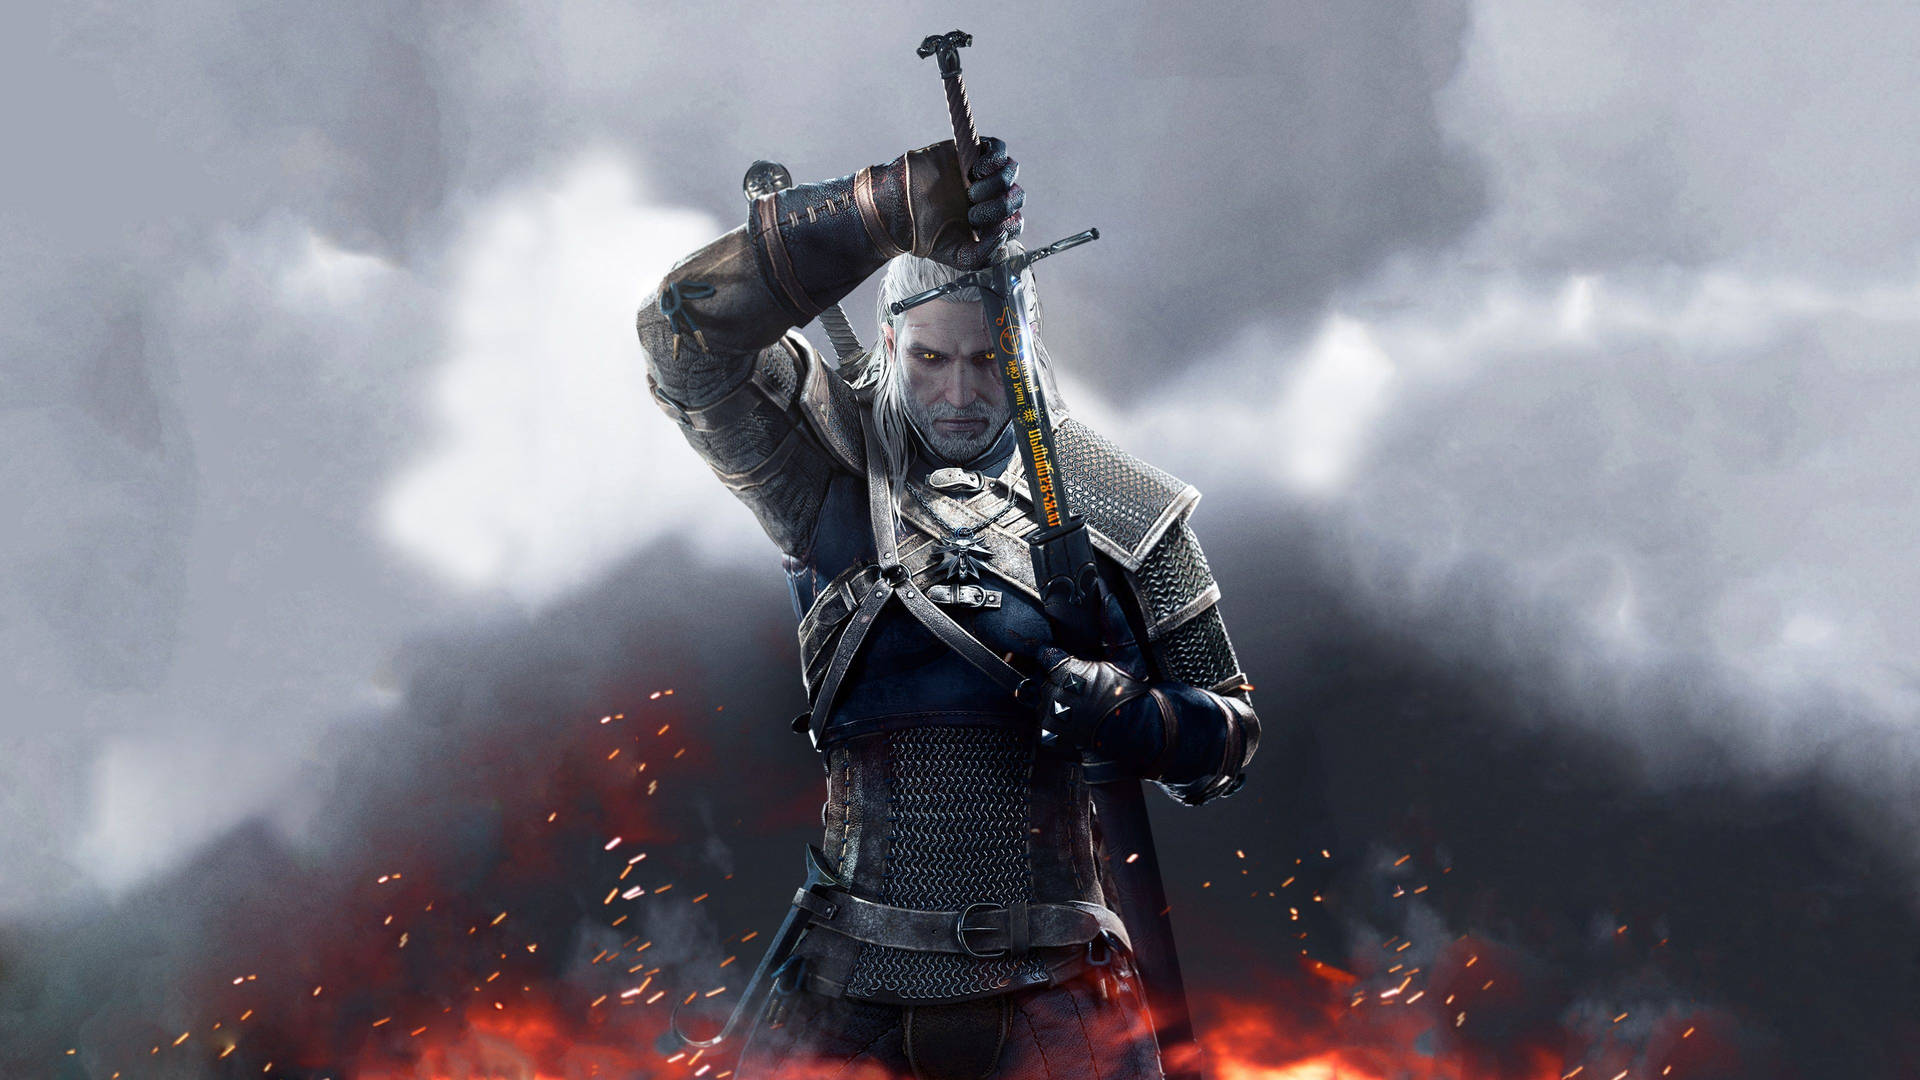 Witcher3 Geralt I 4k. Wallpaper